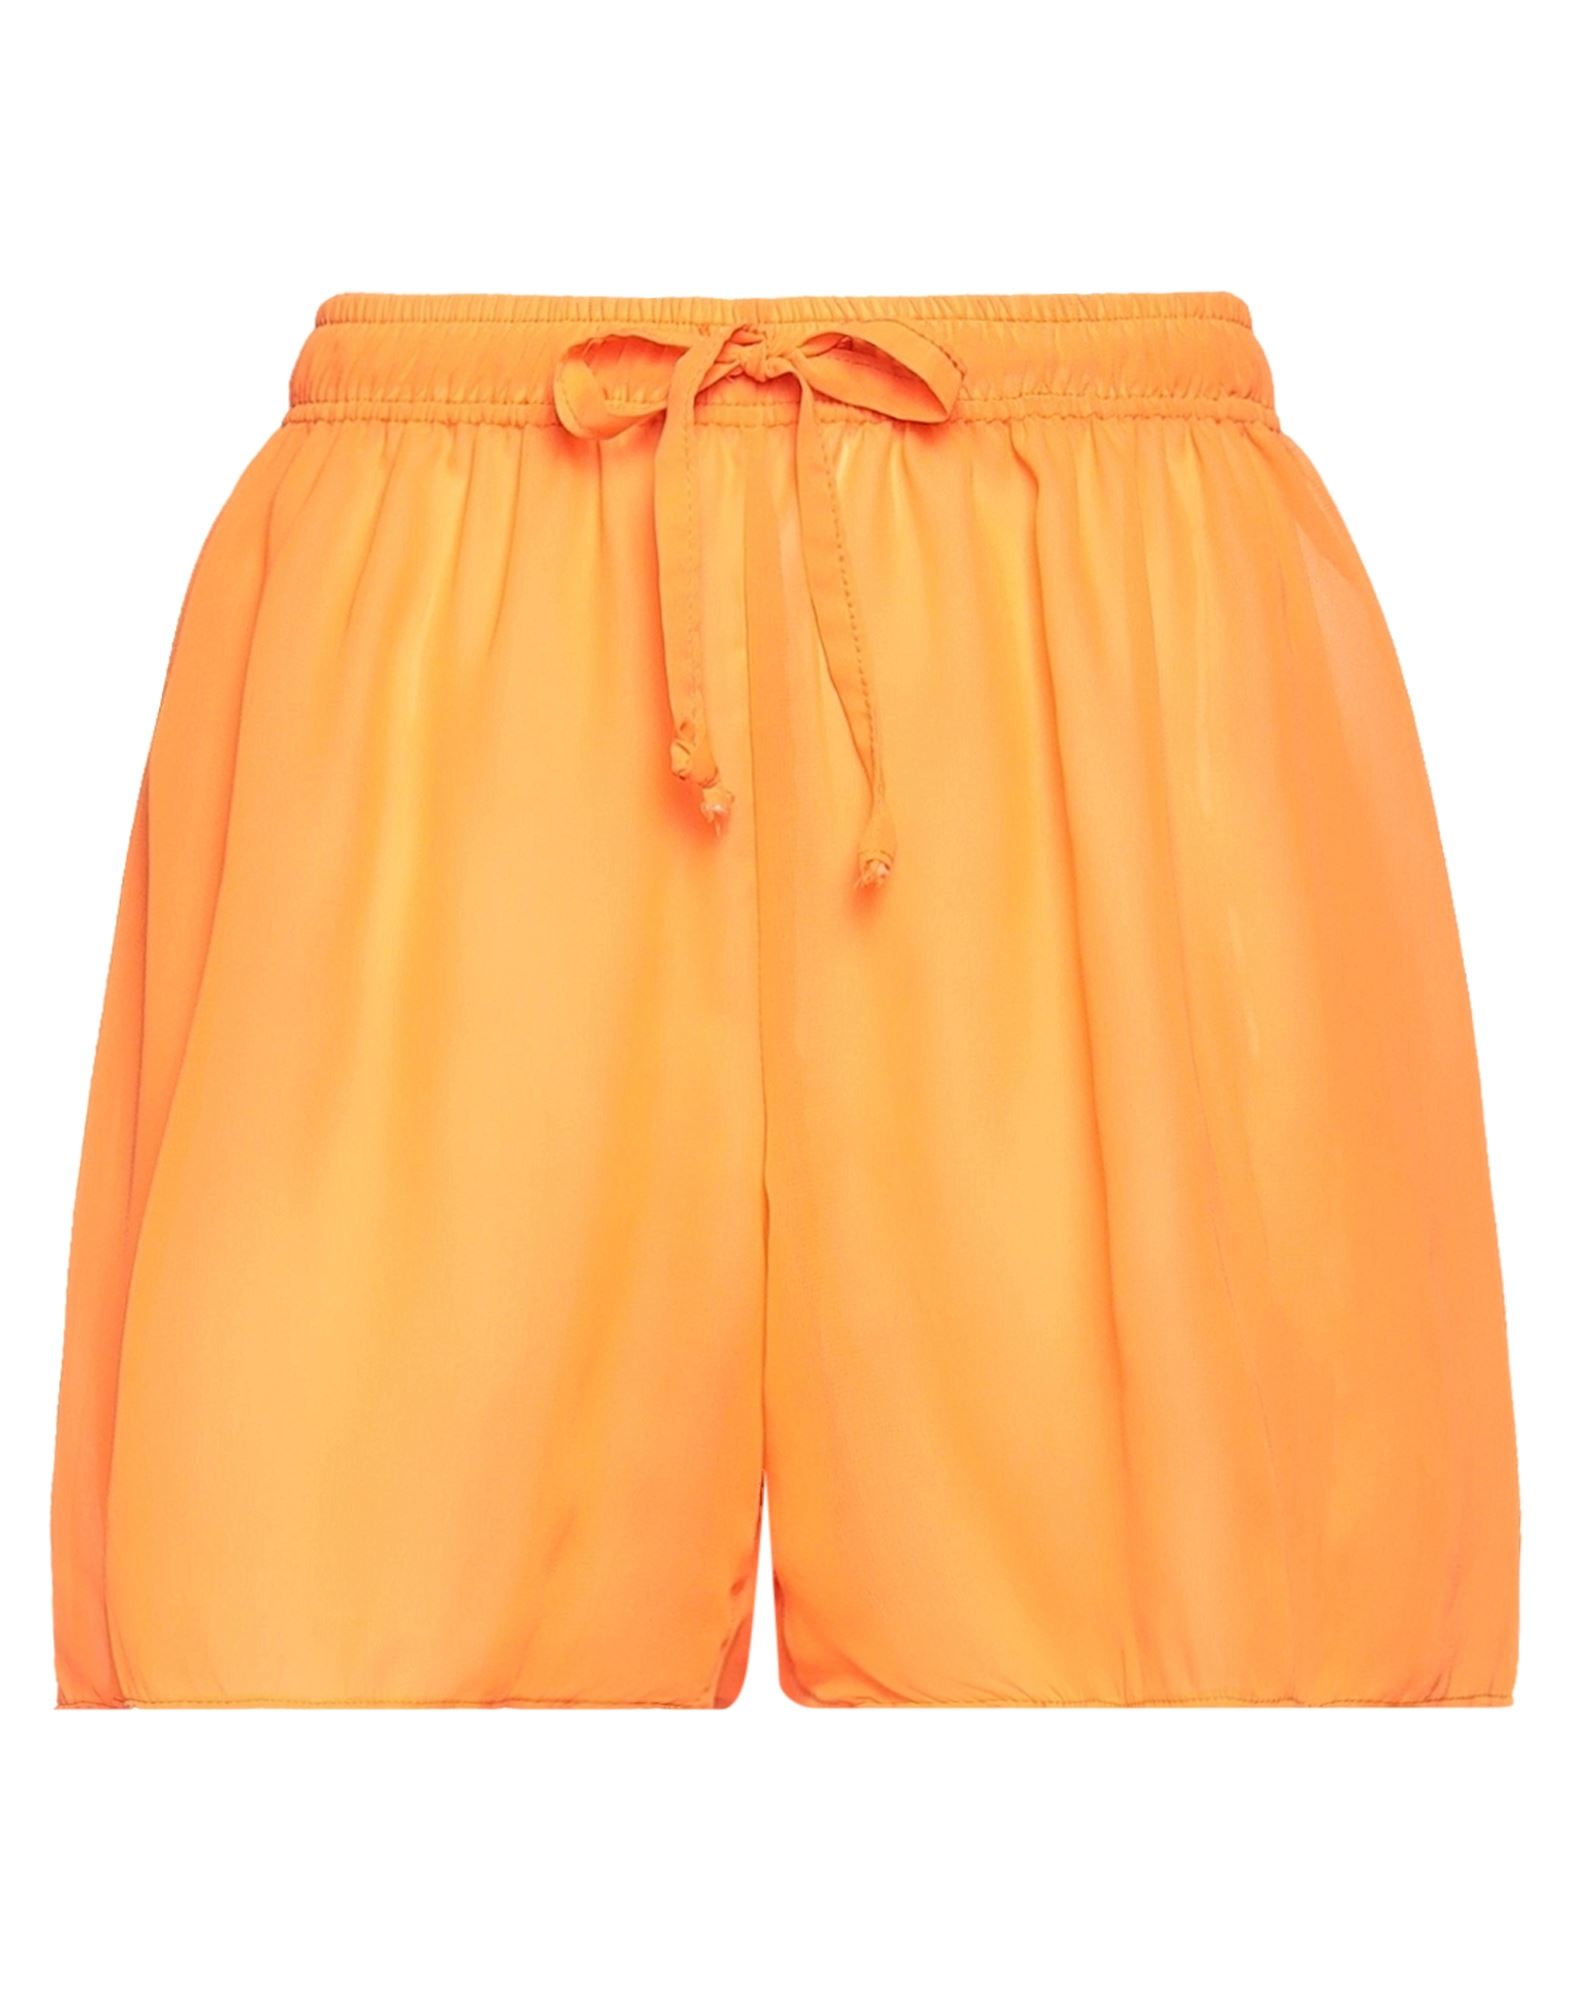 White Woman Shorts & Bermuda Shorts Orange Size M Cotton